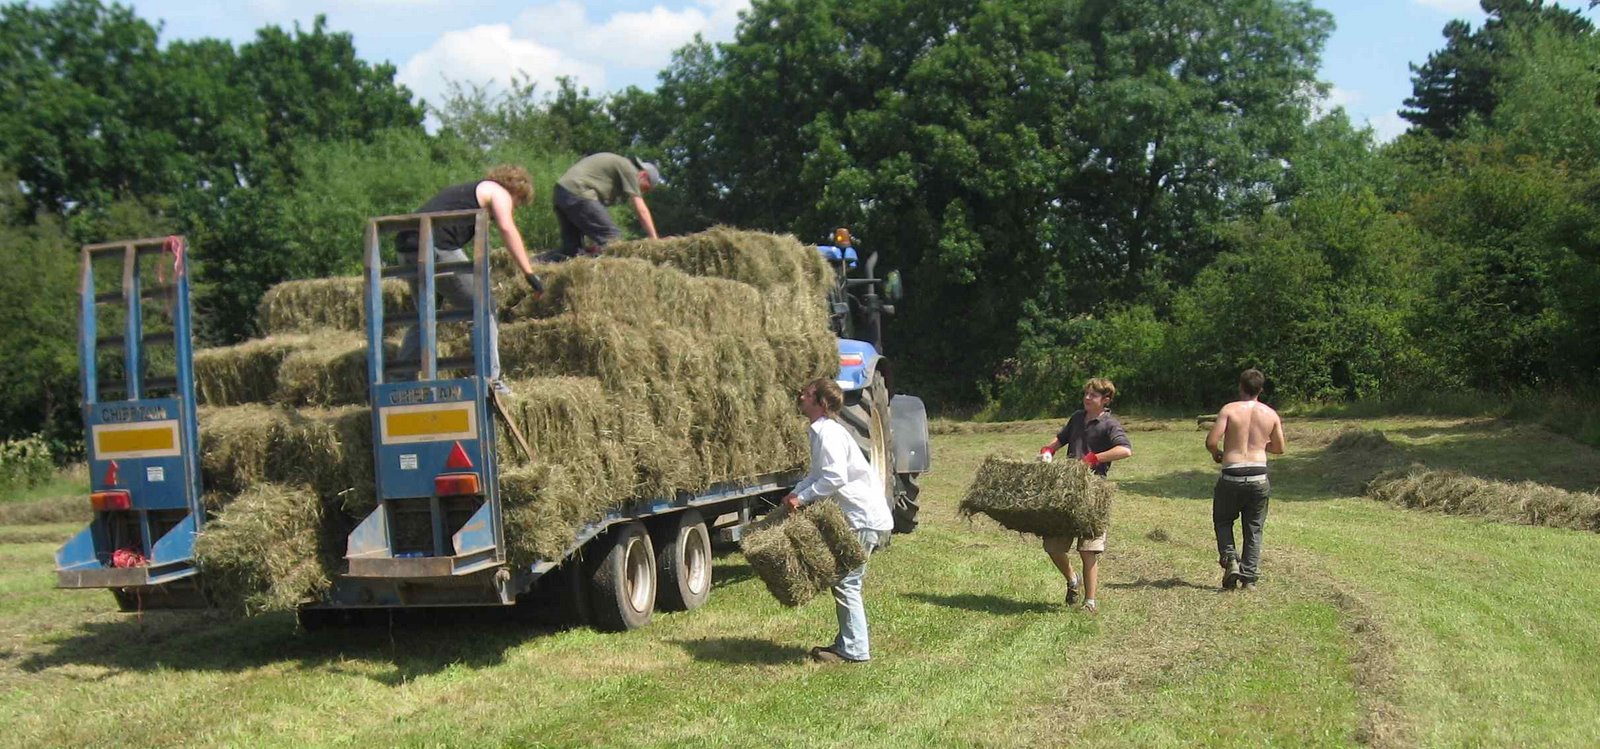 [Making+Hay+Melverley+meadows+July+26th+08+loading.jpg]